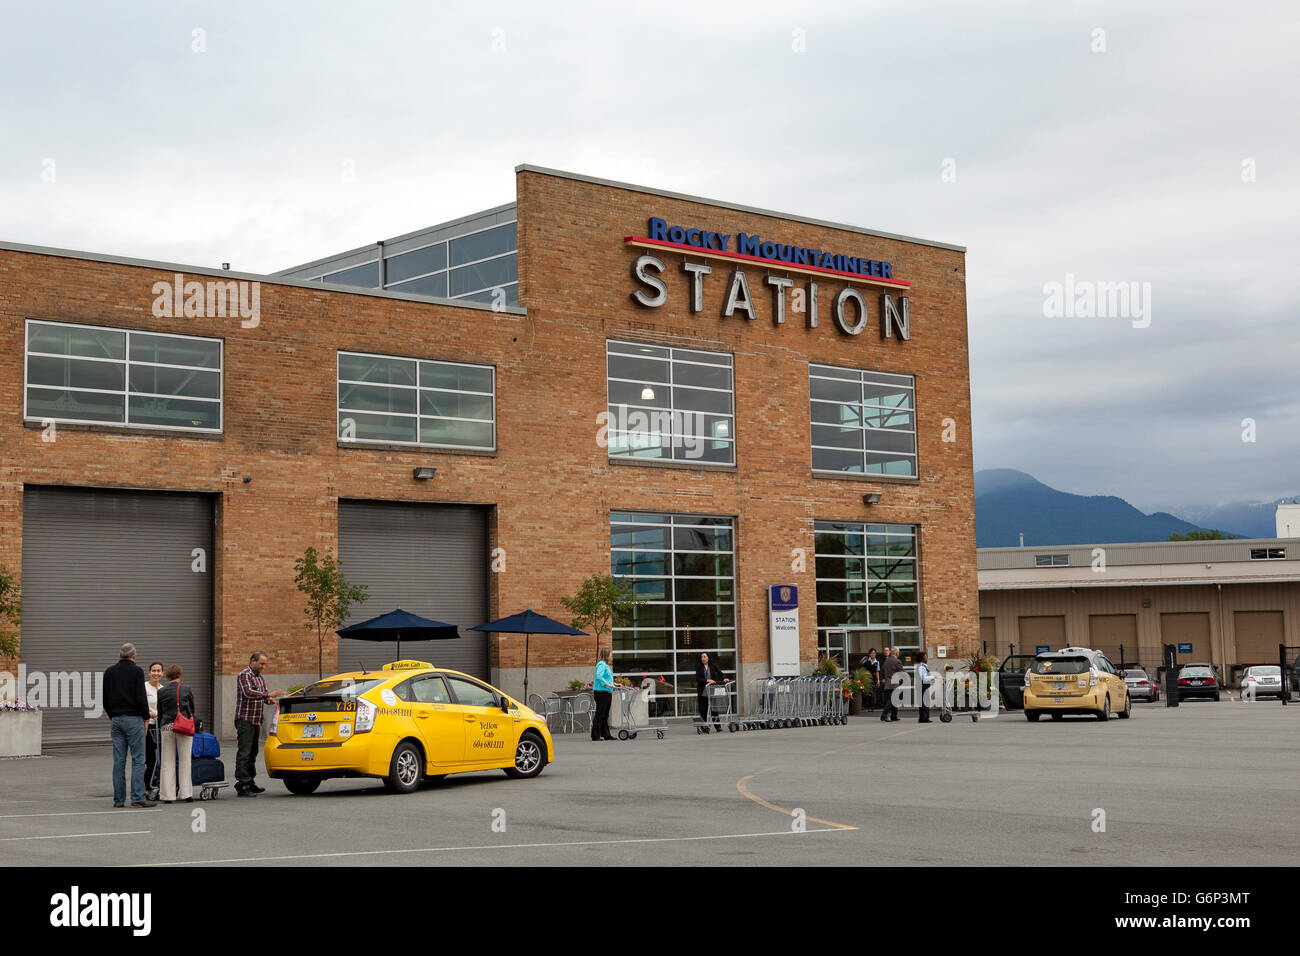 La station pour le Rocky Mountaineer, situé au 1755 Cottrell St, Vancouver, BC Banque D'Images